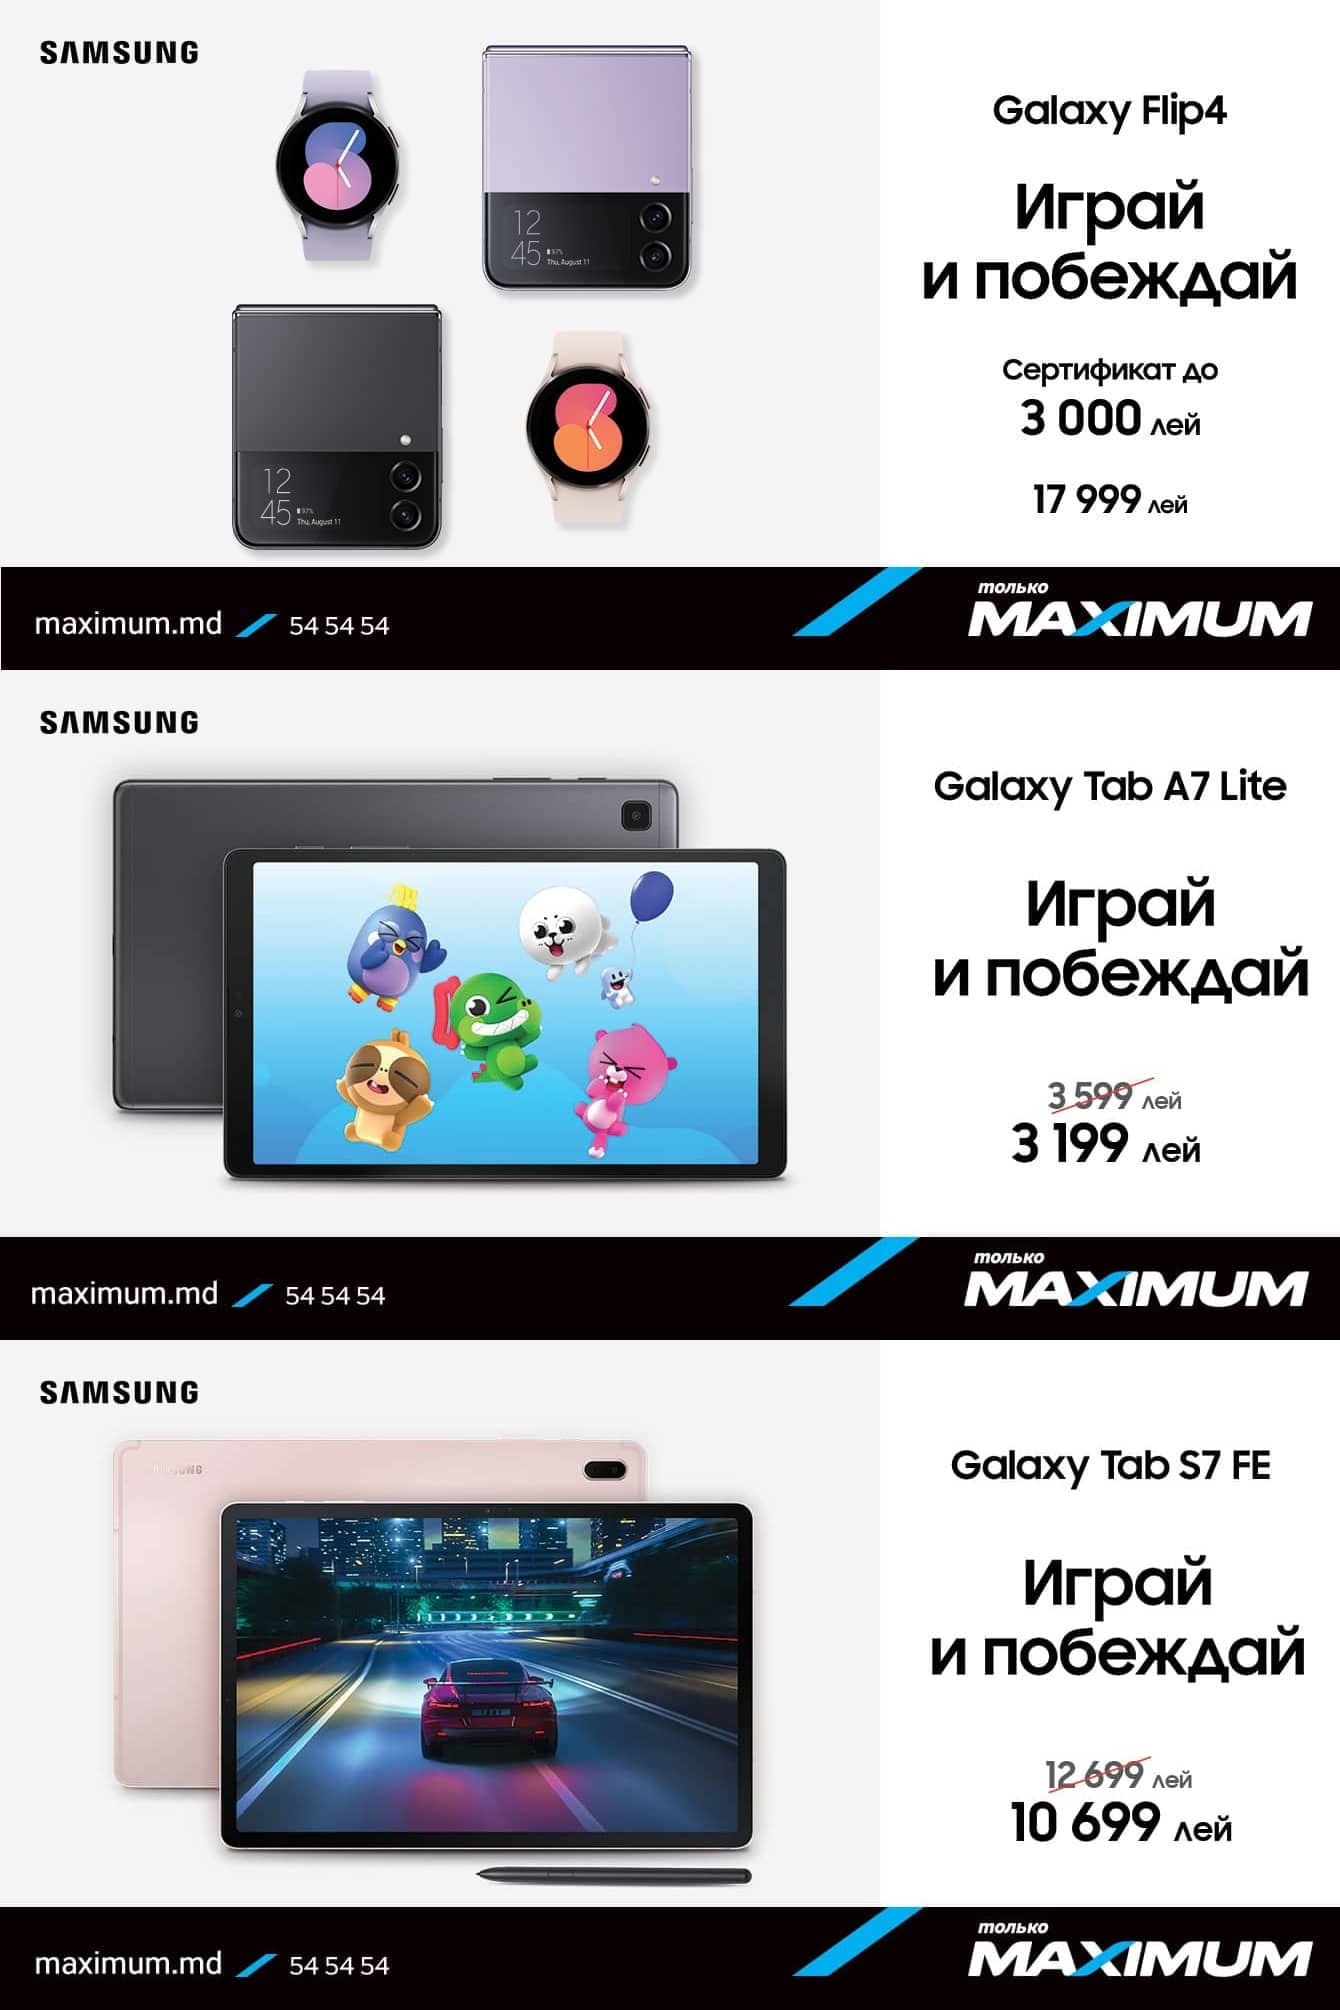 Maximum - Joacă și câștigă cu Samsung Galaxy - 2